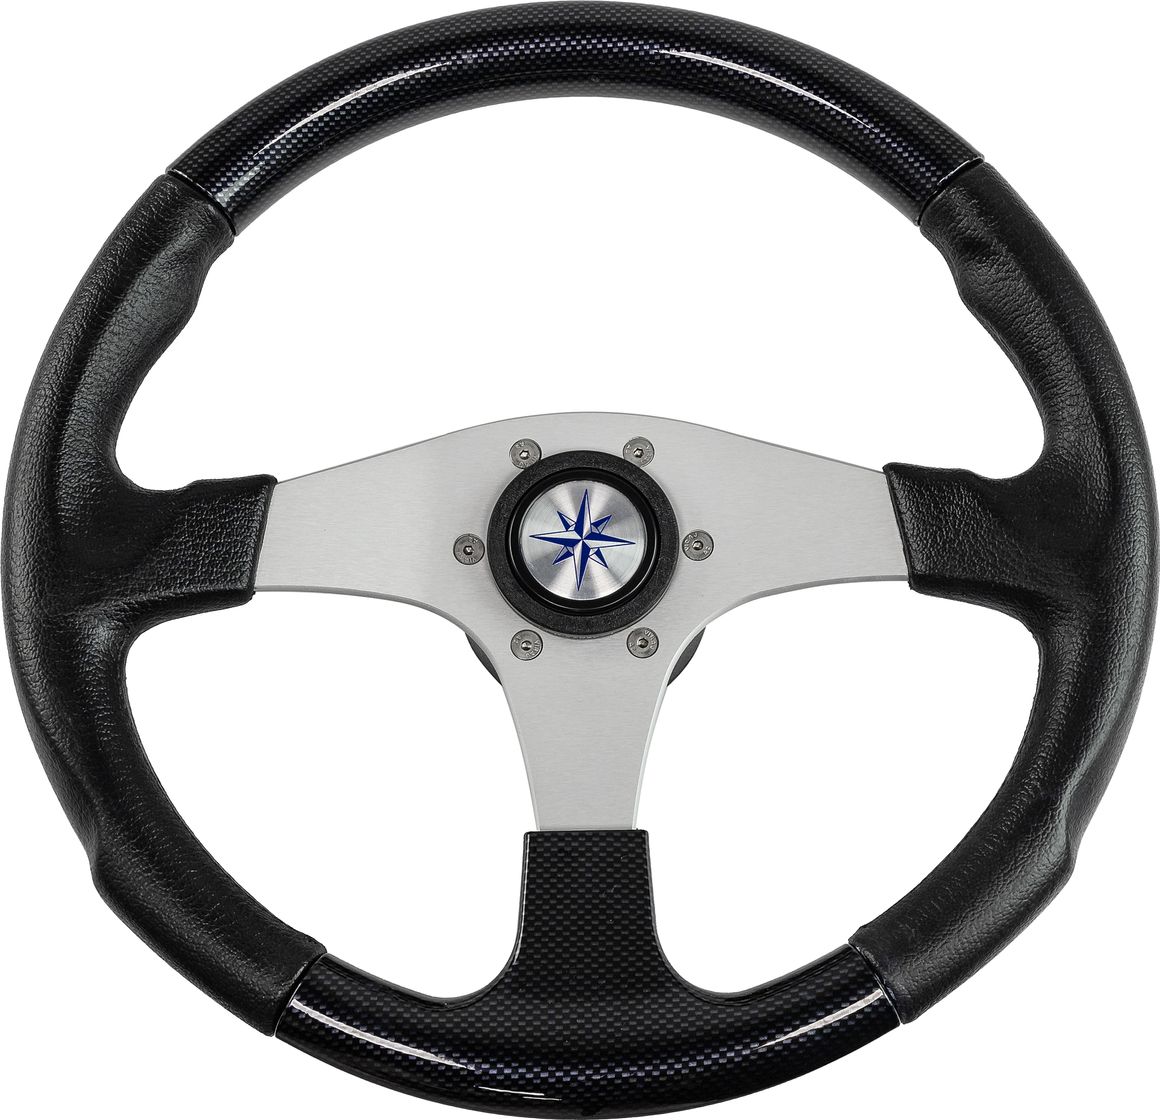 Рулевое колесо EVO MARINE 2 обод черный, спицы серебряные д. 355 мм VN850001-35 рулевое колесо orion обод спицы серебряные д 355 мм vn960101 01